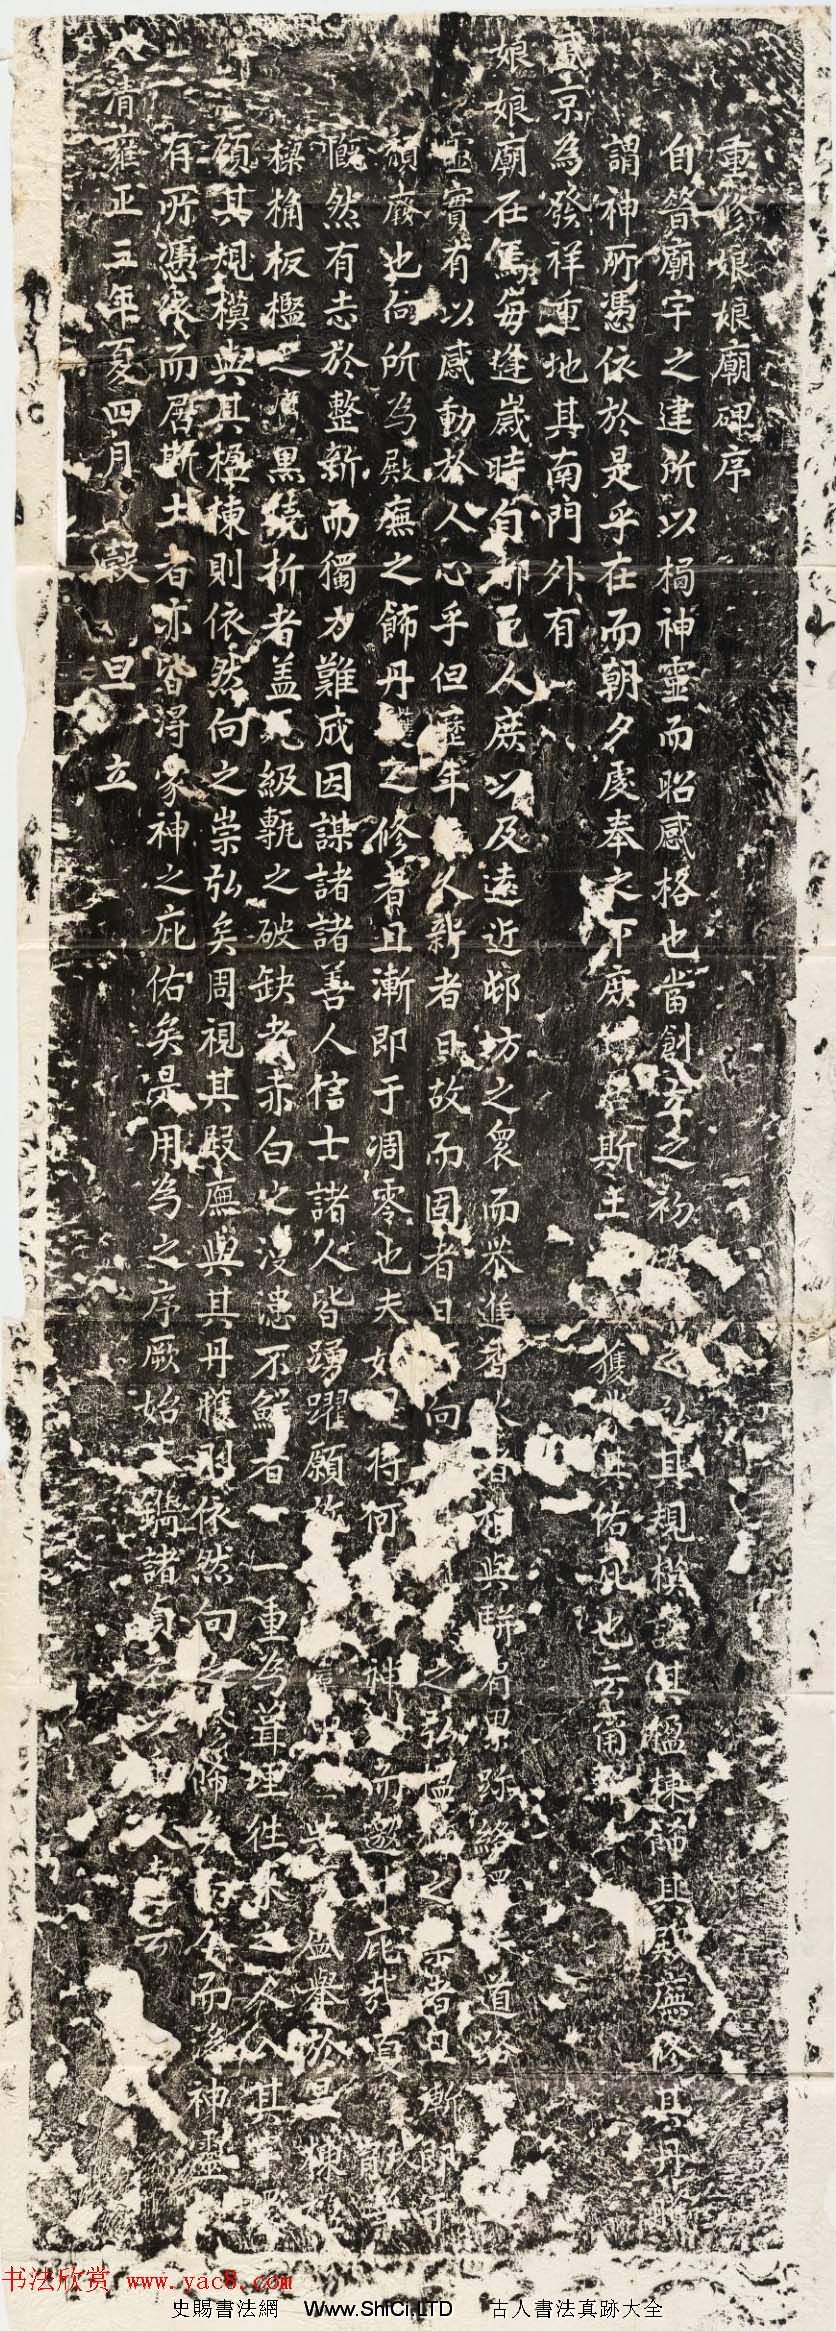 清代書法碑刻《重修娘娘廟碑序》陰陽兩面全圖